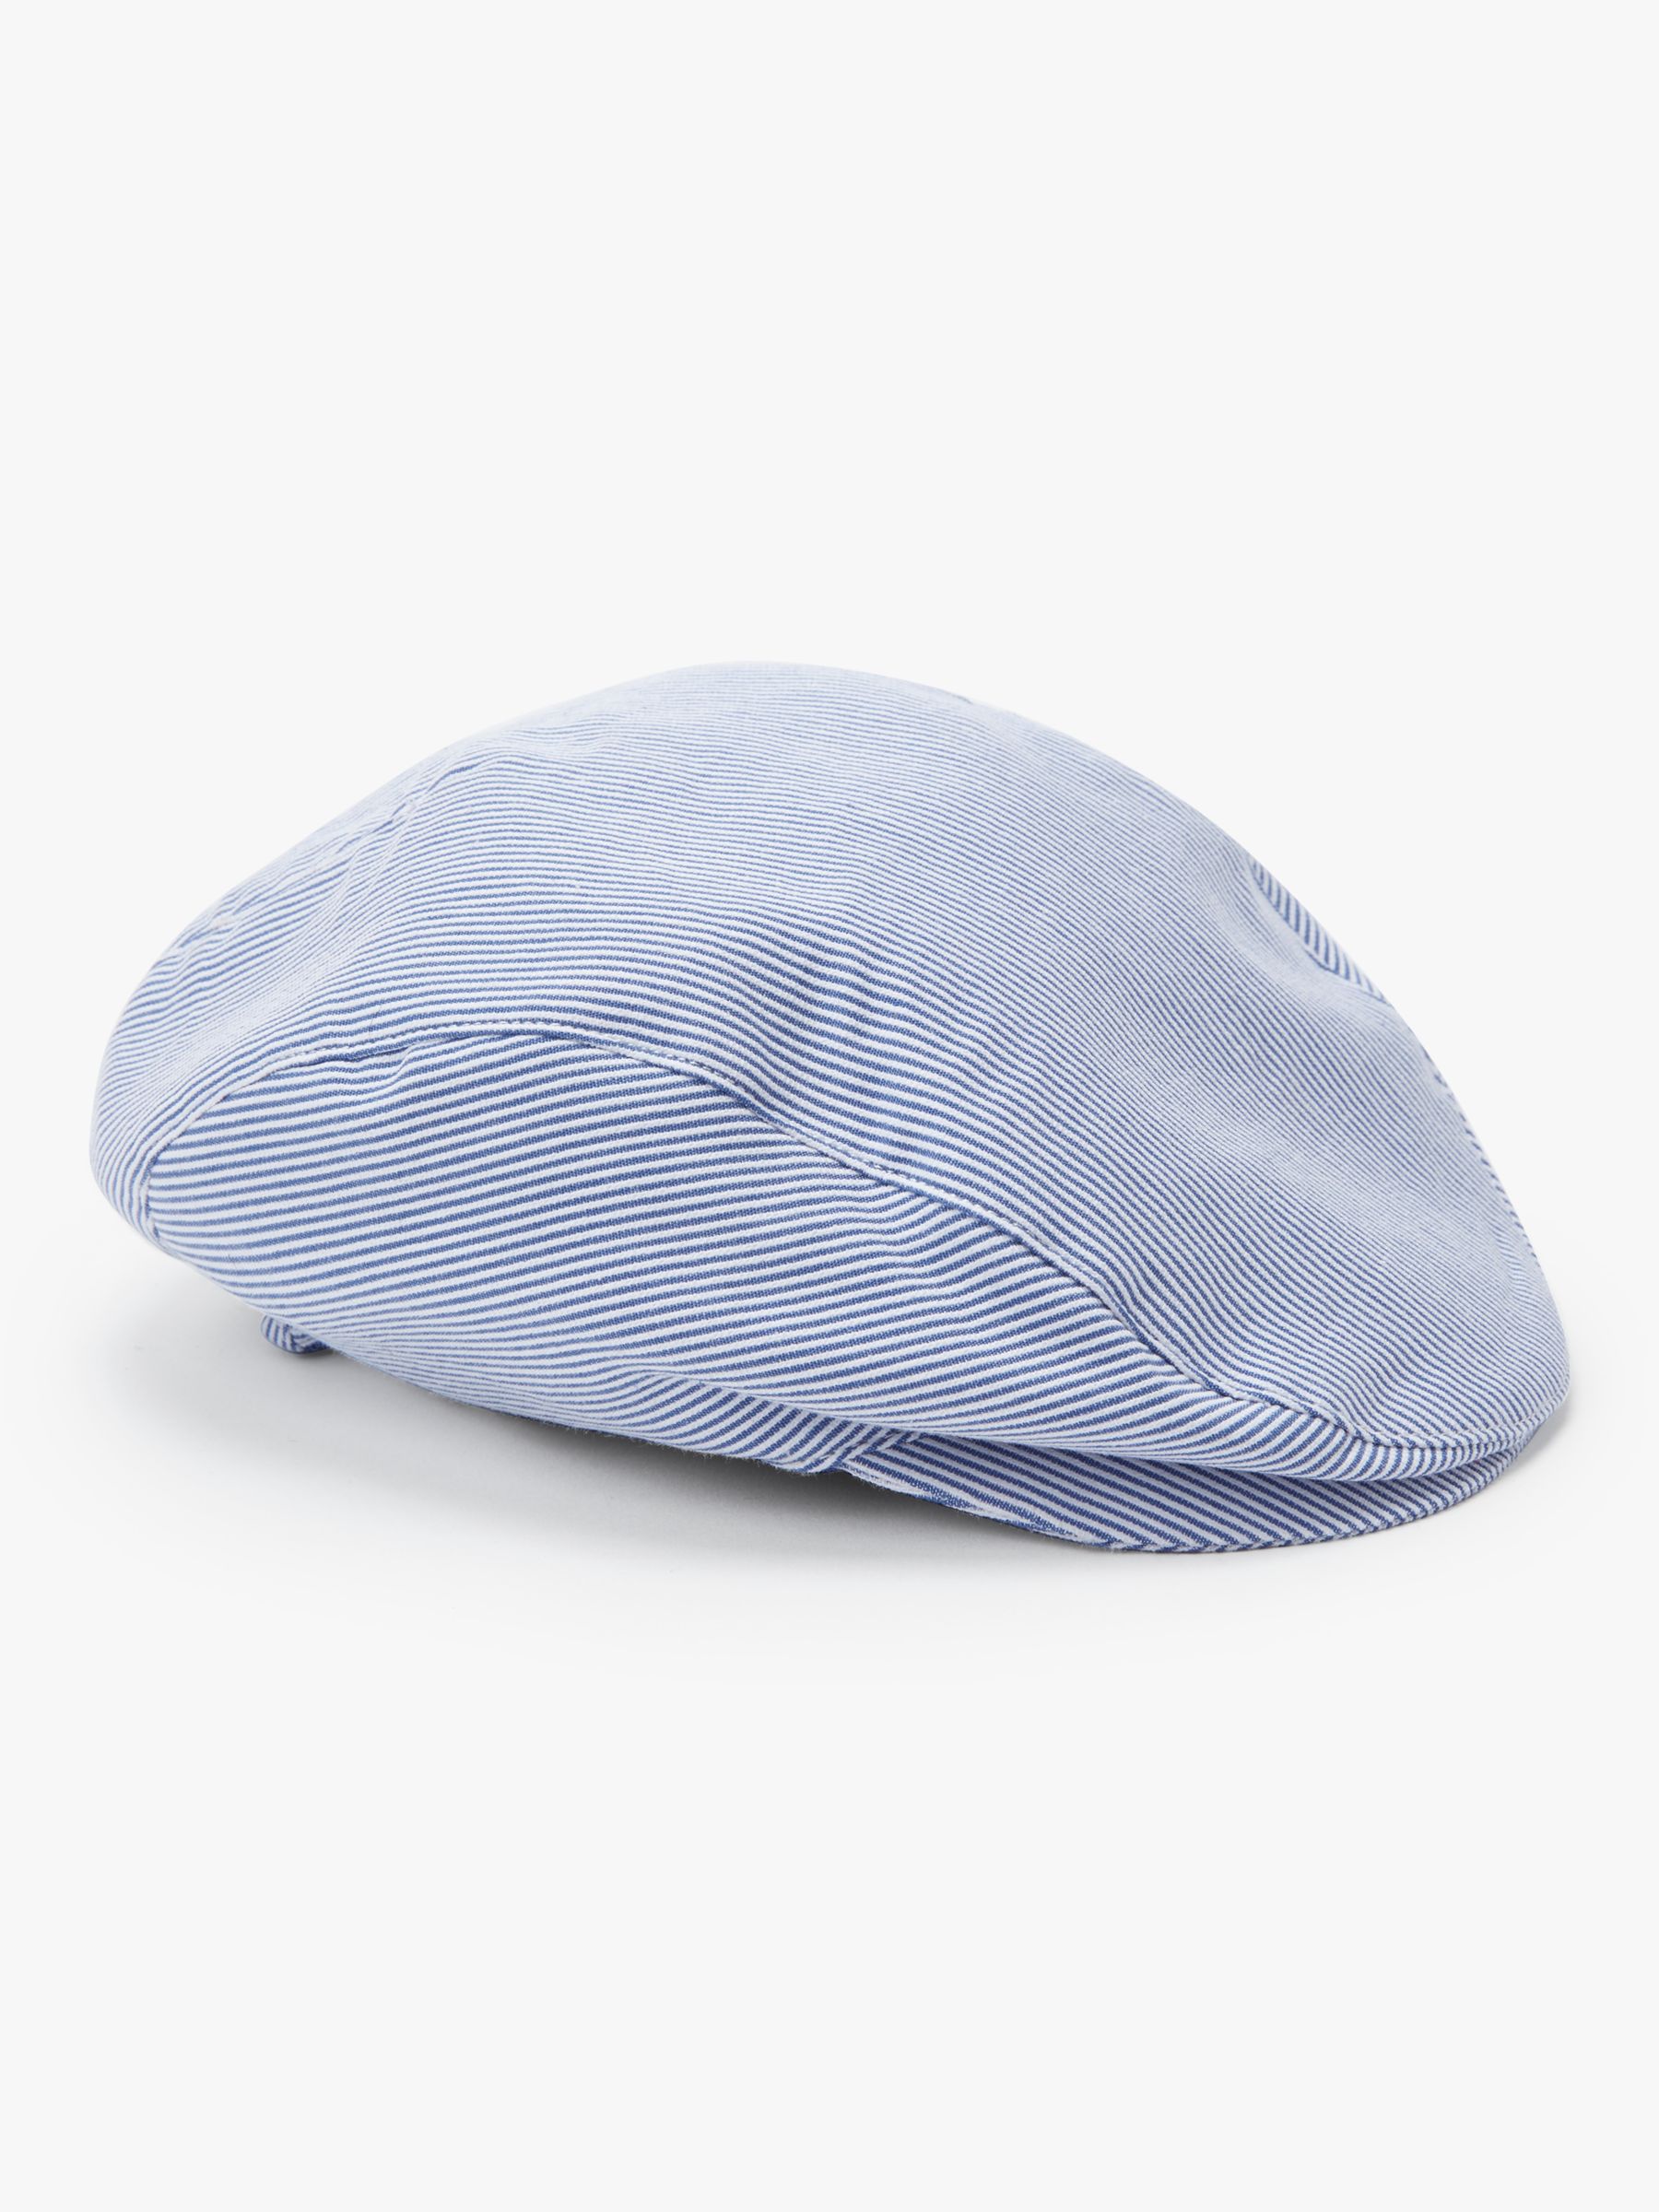 newborn flat cap